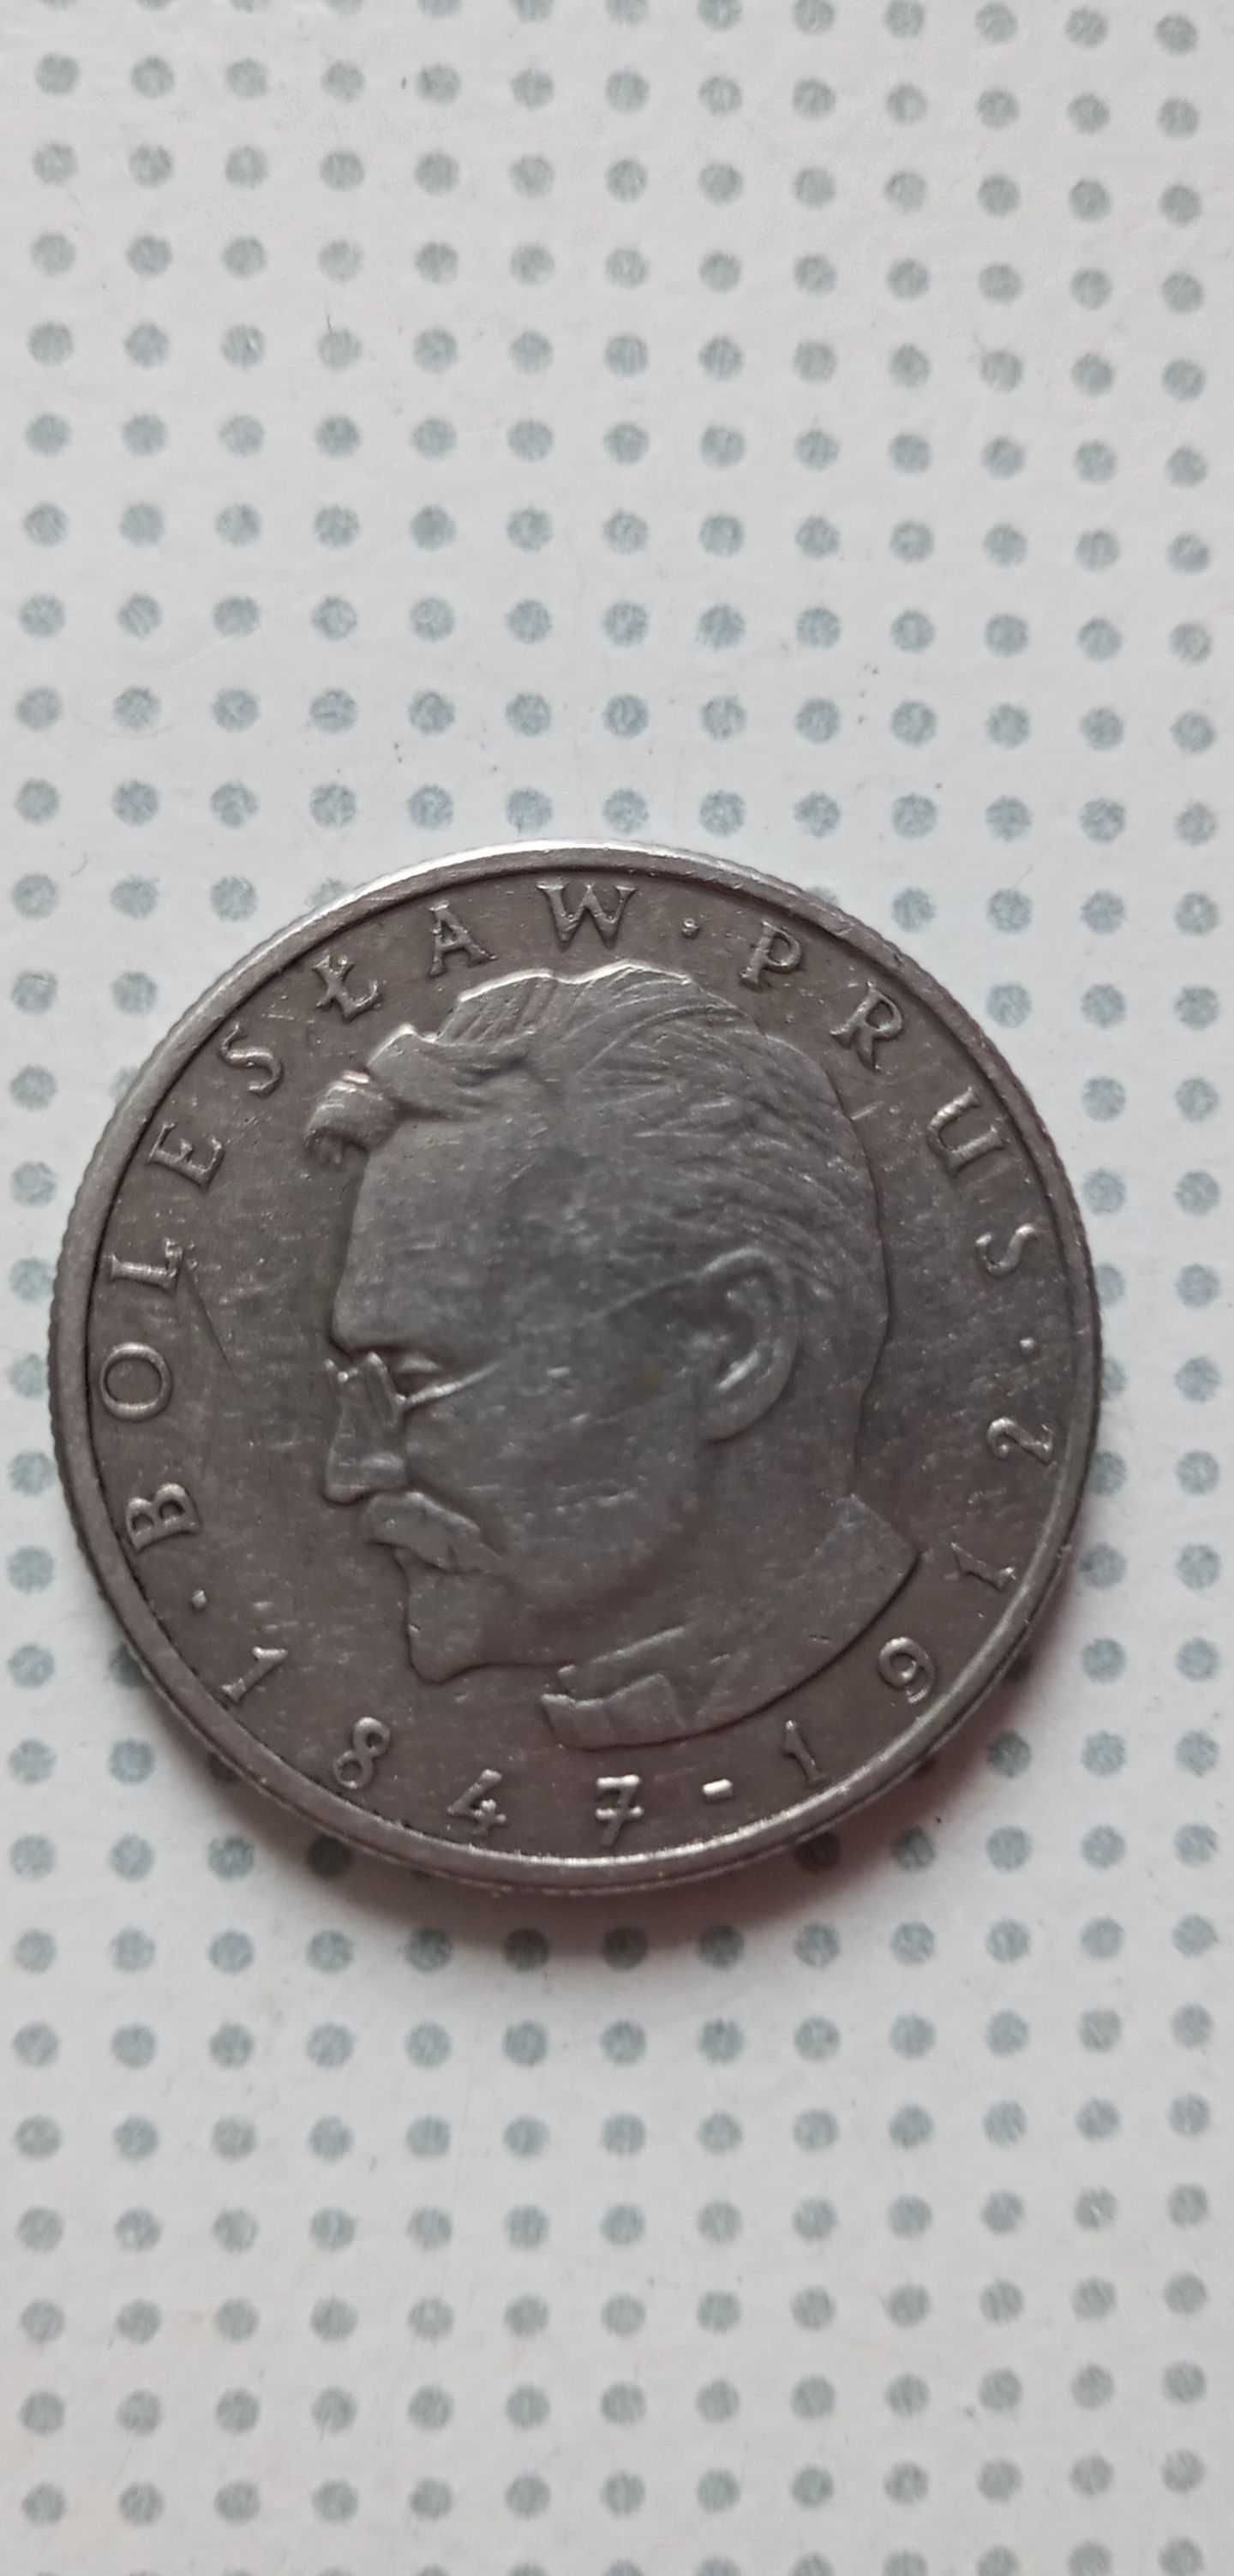 Moneta Bolesław Prus 10 zł 1978 rok okazja dla kolekcjonerów